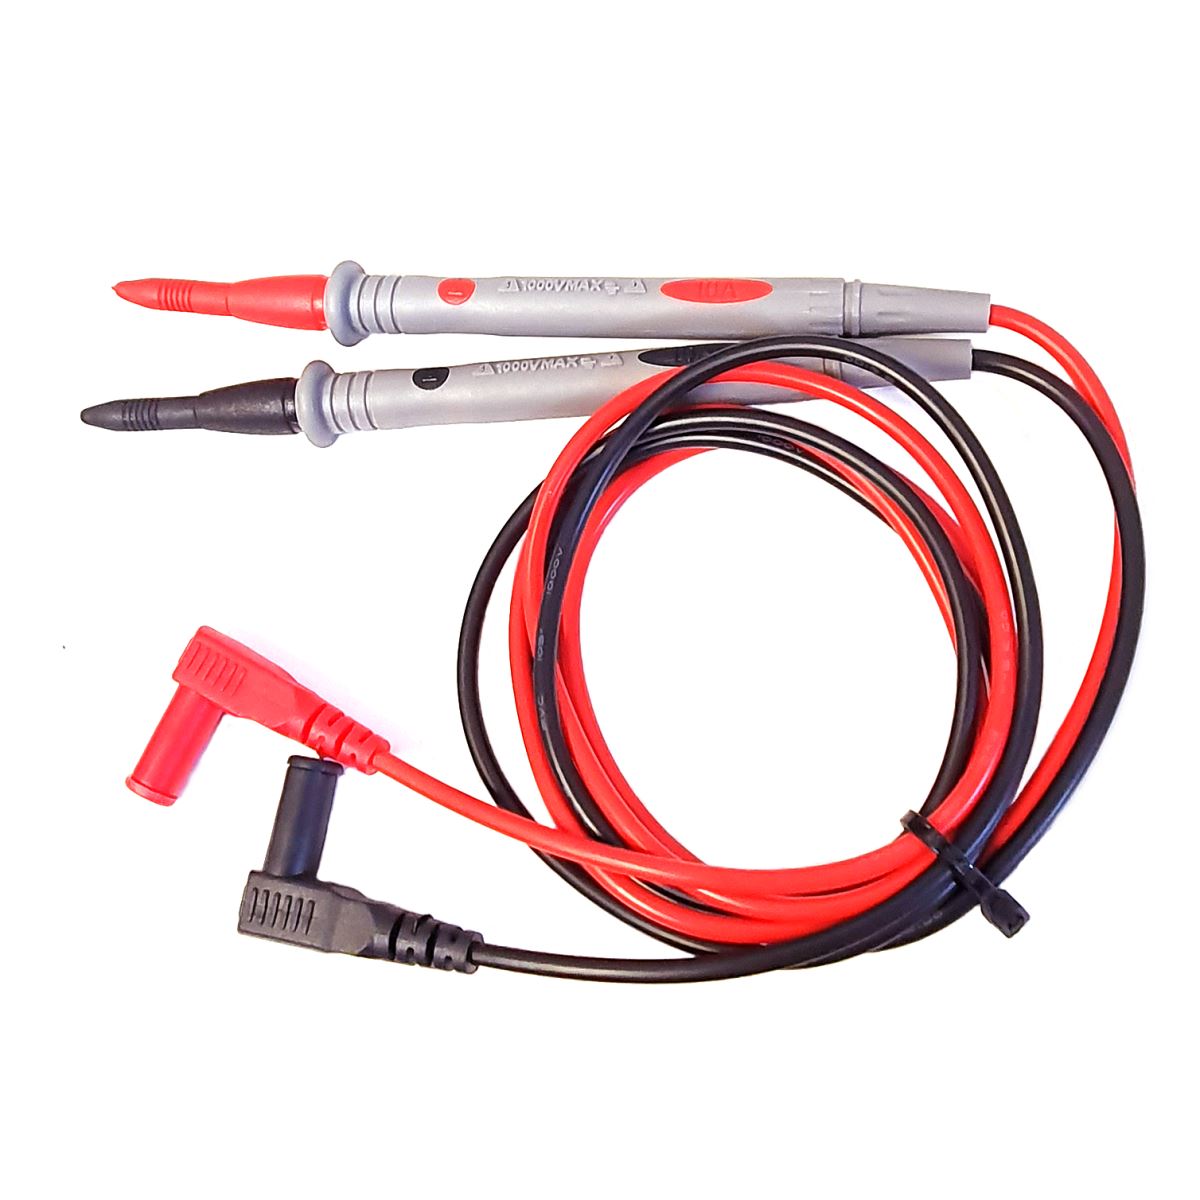 Quality Digital Test Lead Probes 10A Multimeter Volt Meter Cables Red Black UK